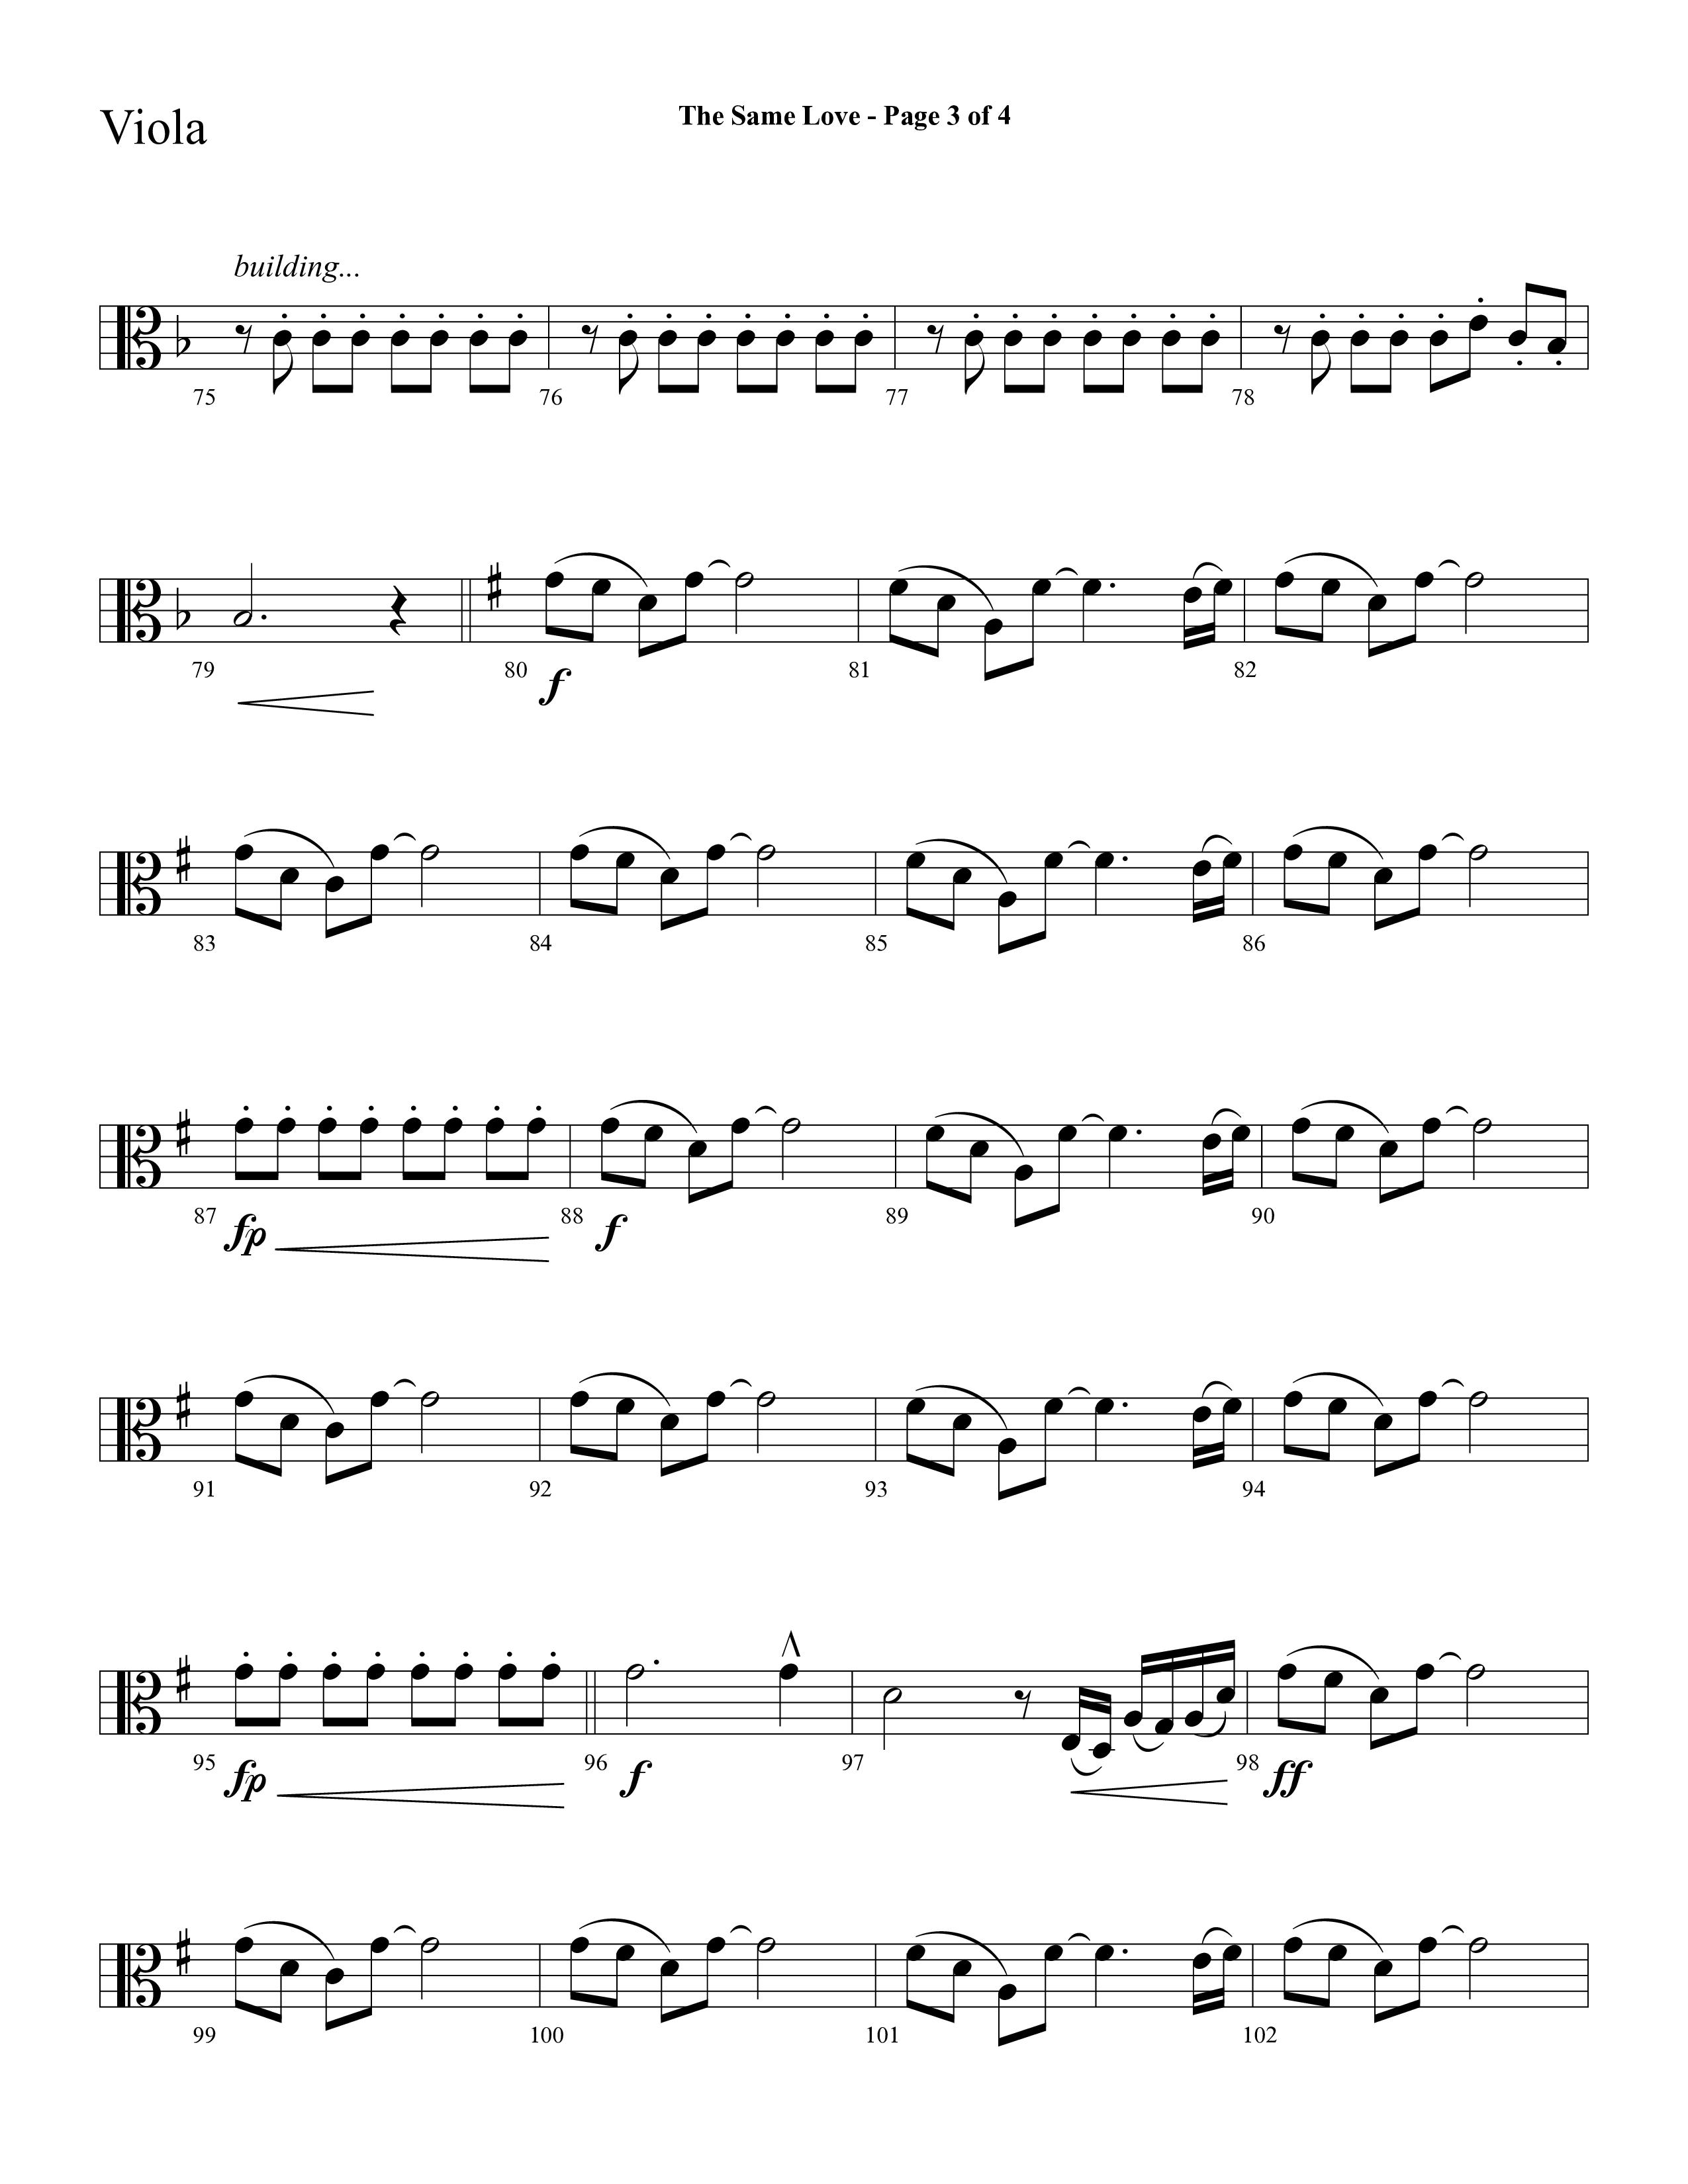 The Same Love (Choral Anthem SATB) Viola (Lifeway Choral / Arr. Cliff Duren)